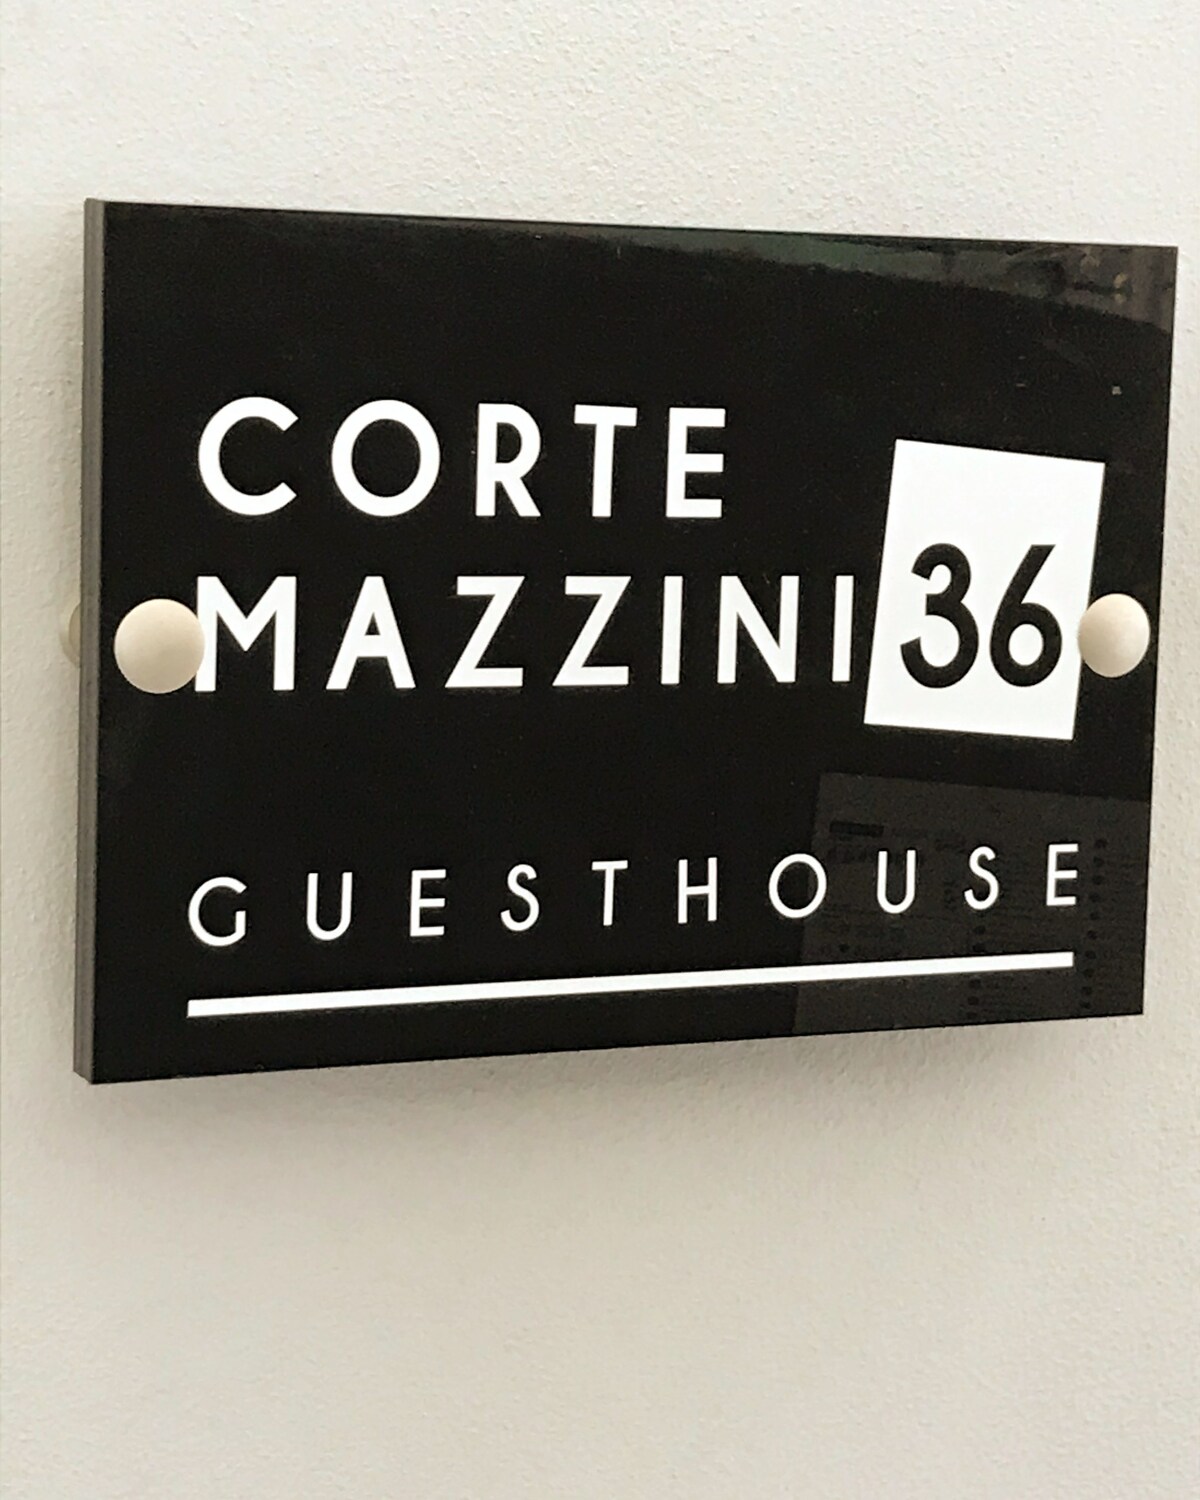 Guest House CorteMazzini36 Centro Storico